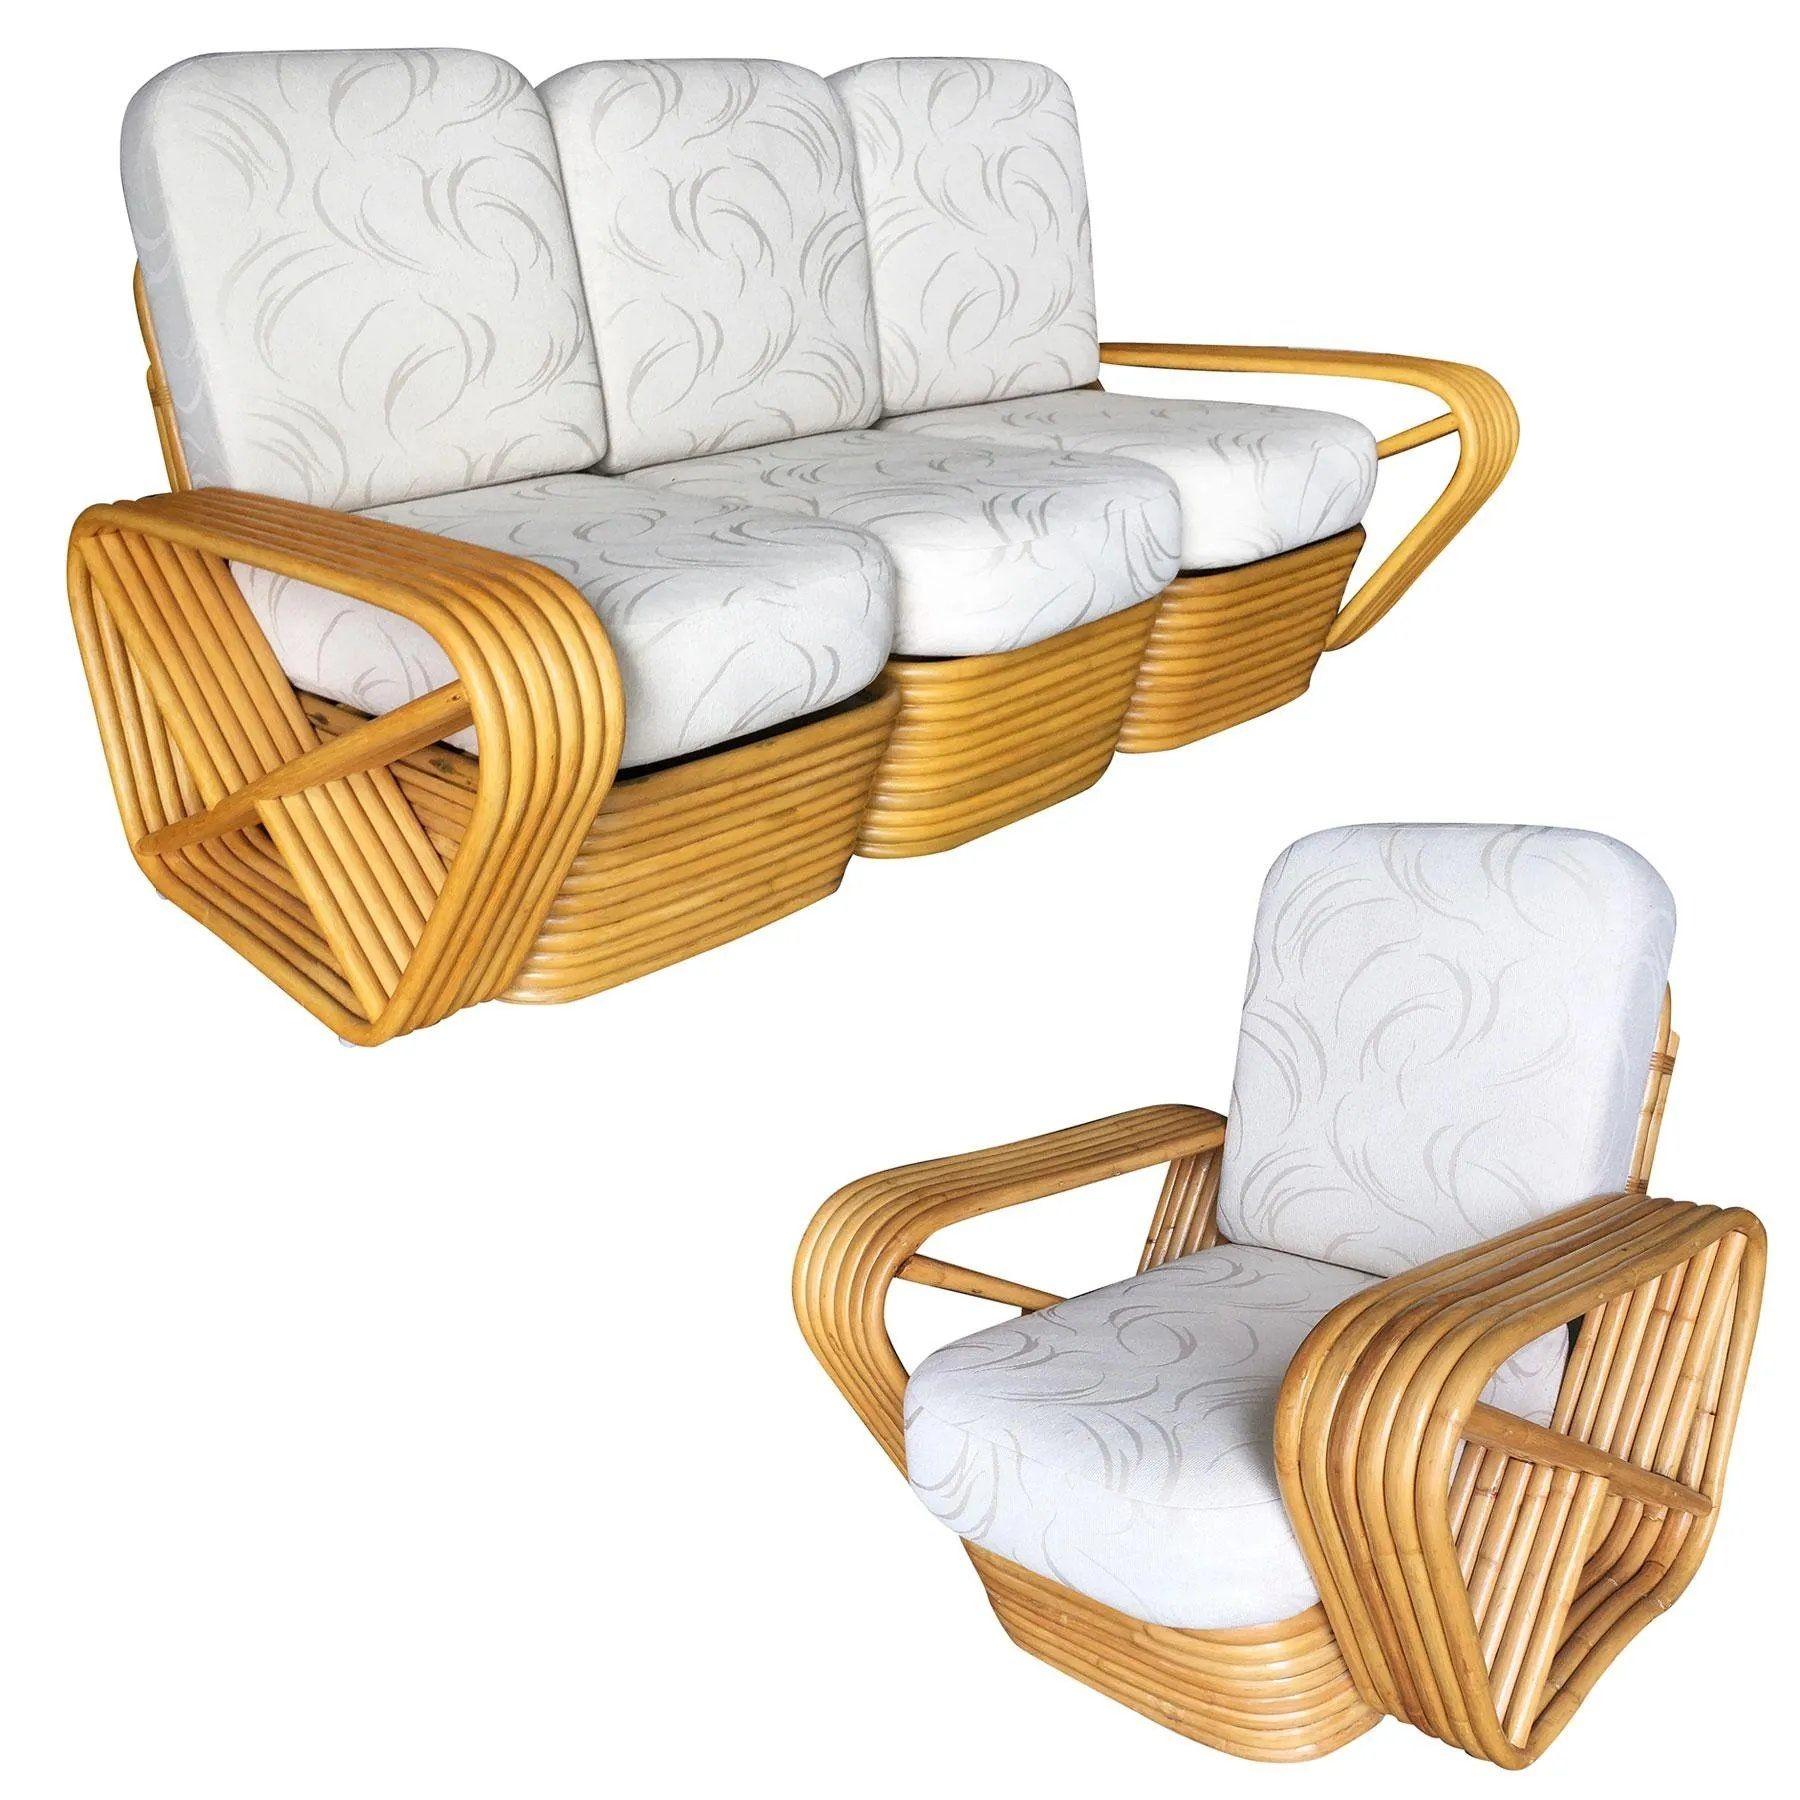 Art Deco Rattan-Wohnzimmer-Set mit passendem Sektionssofa und Sessel. Beide verfügen über die berühmten sechssträngigen, quadratischen Brezel-Seitenarme und den gestapelten Rattan-Sockel, der ursprünglich von Paul Frankl entworfen wurde. Die Sitze